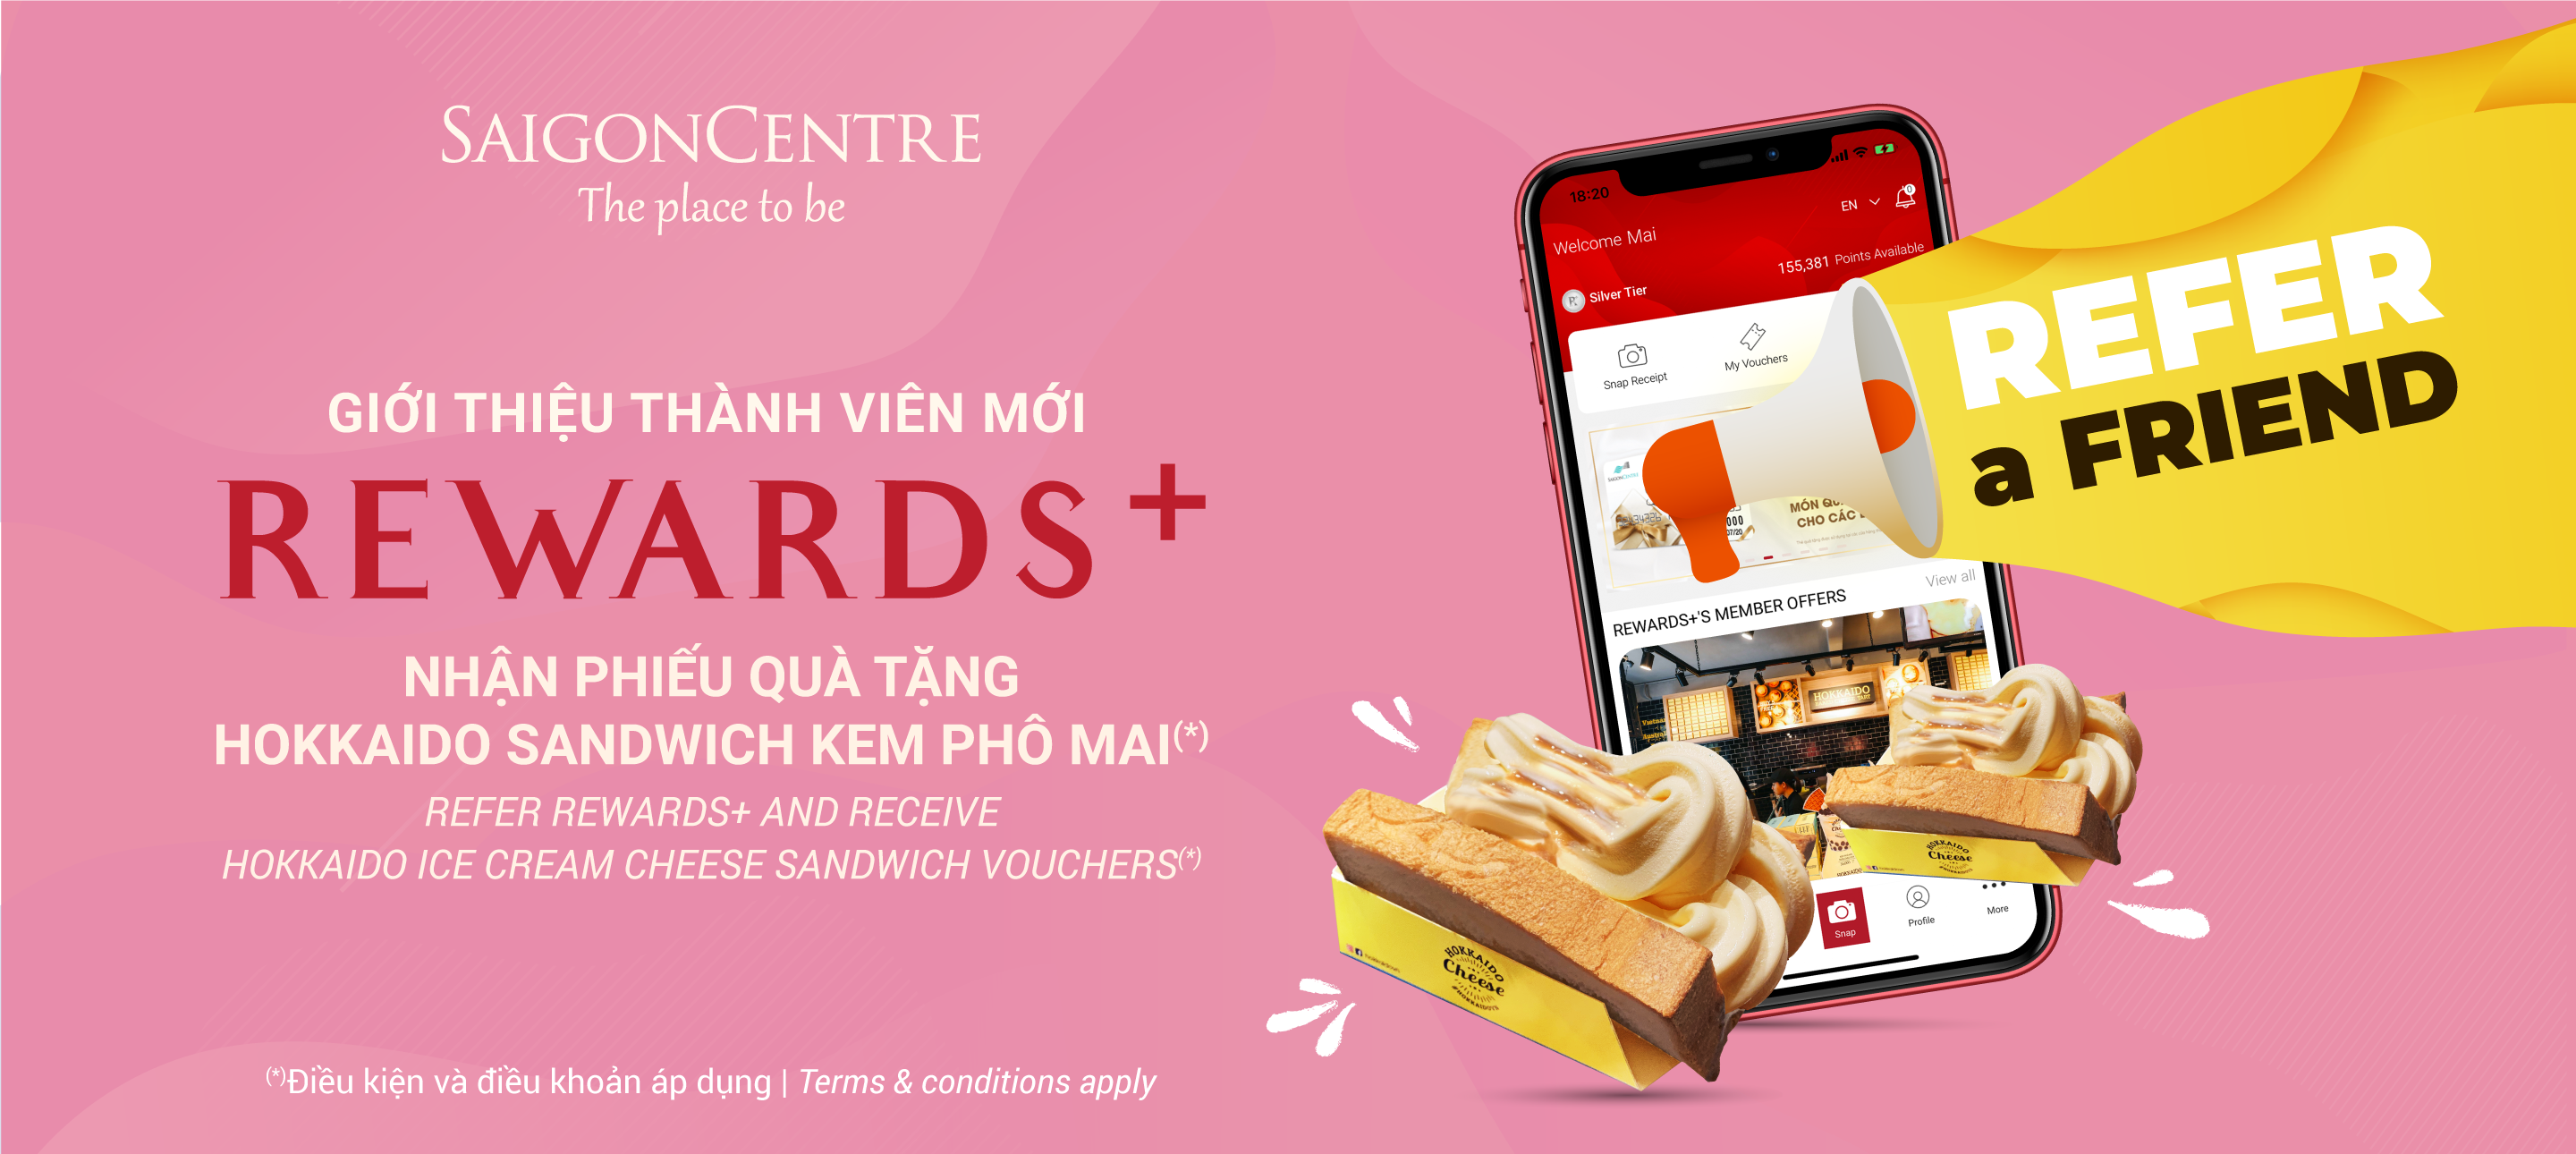 Giới thiệu thành viên mới Rewards+, nhận phiếu quà tặng Hokkaido Sandwich Kem Phô Mai (*)